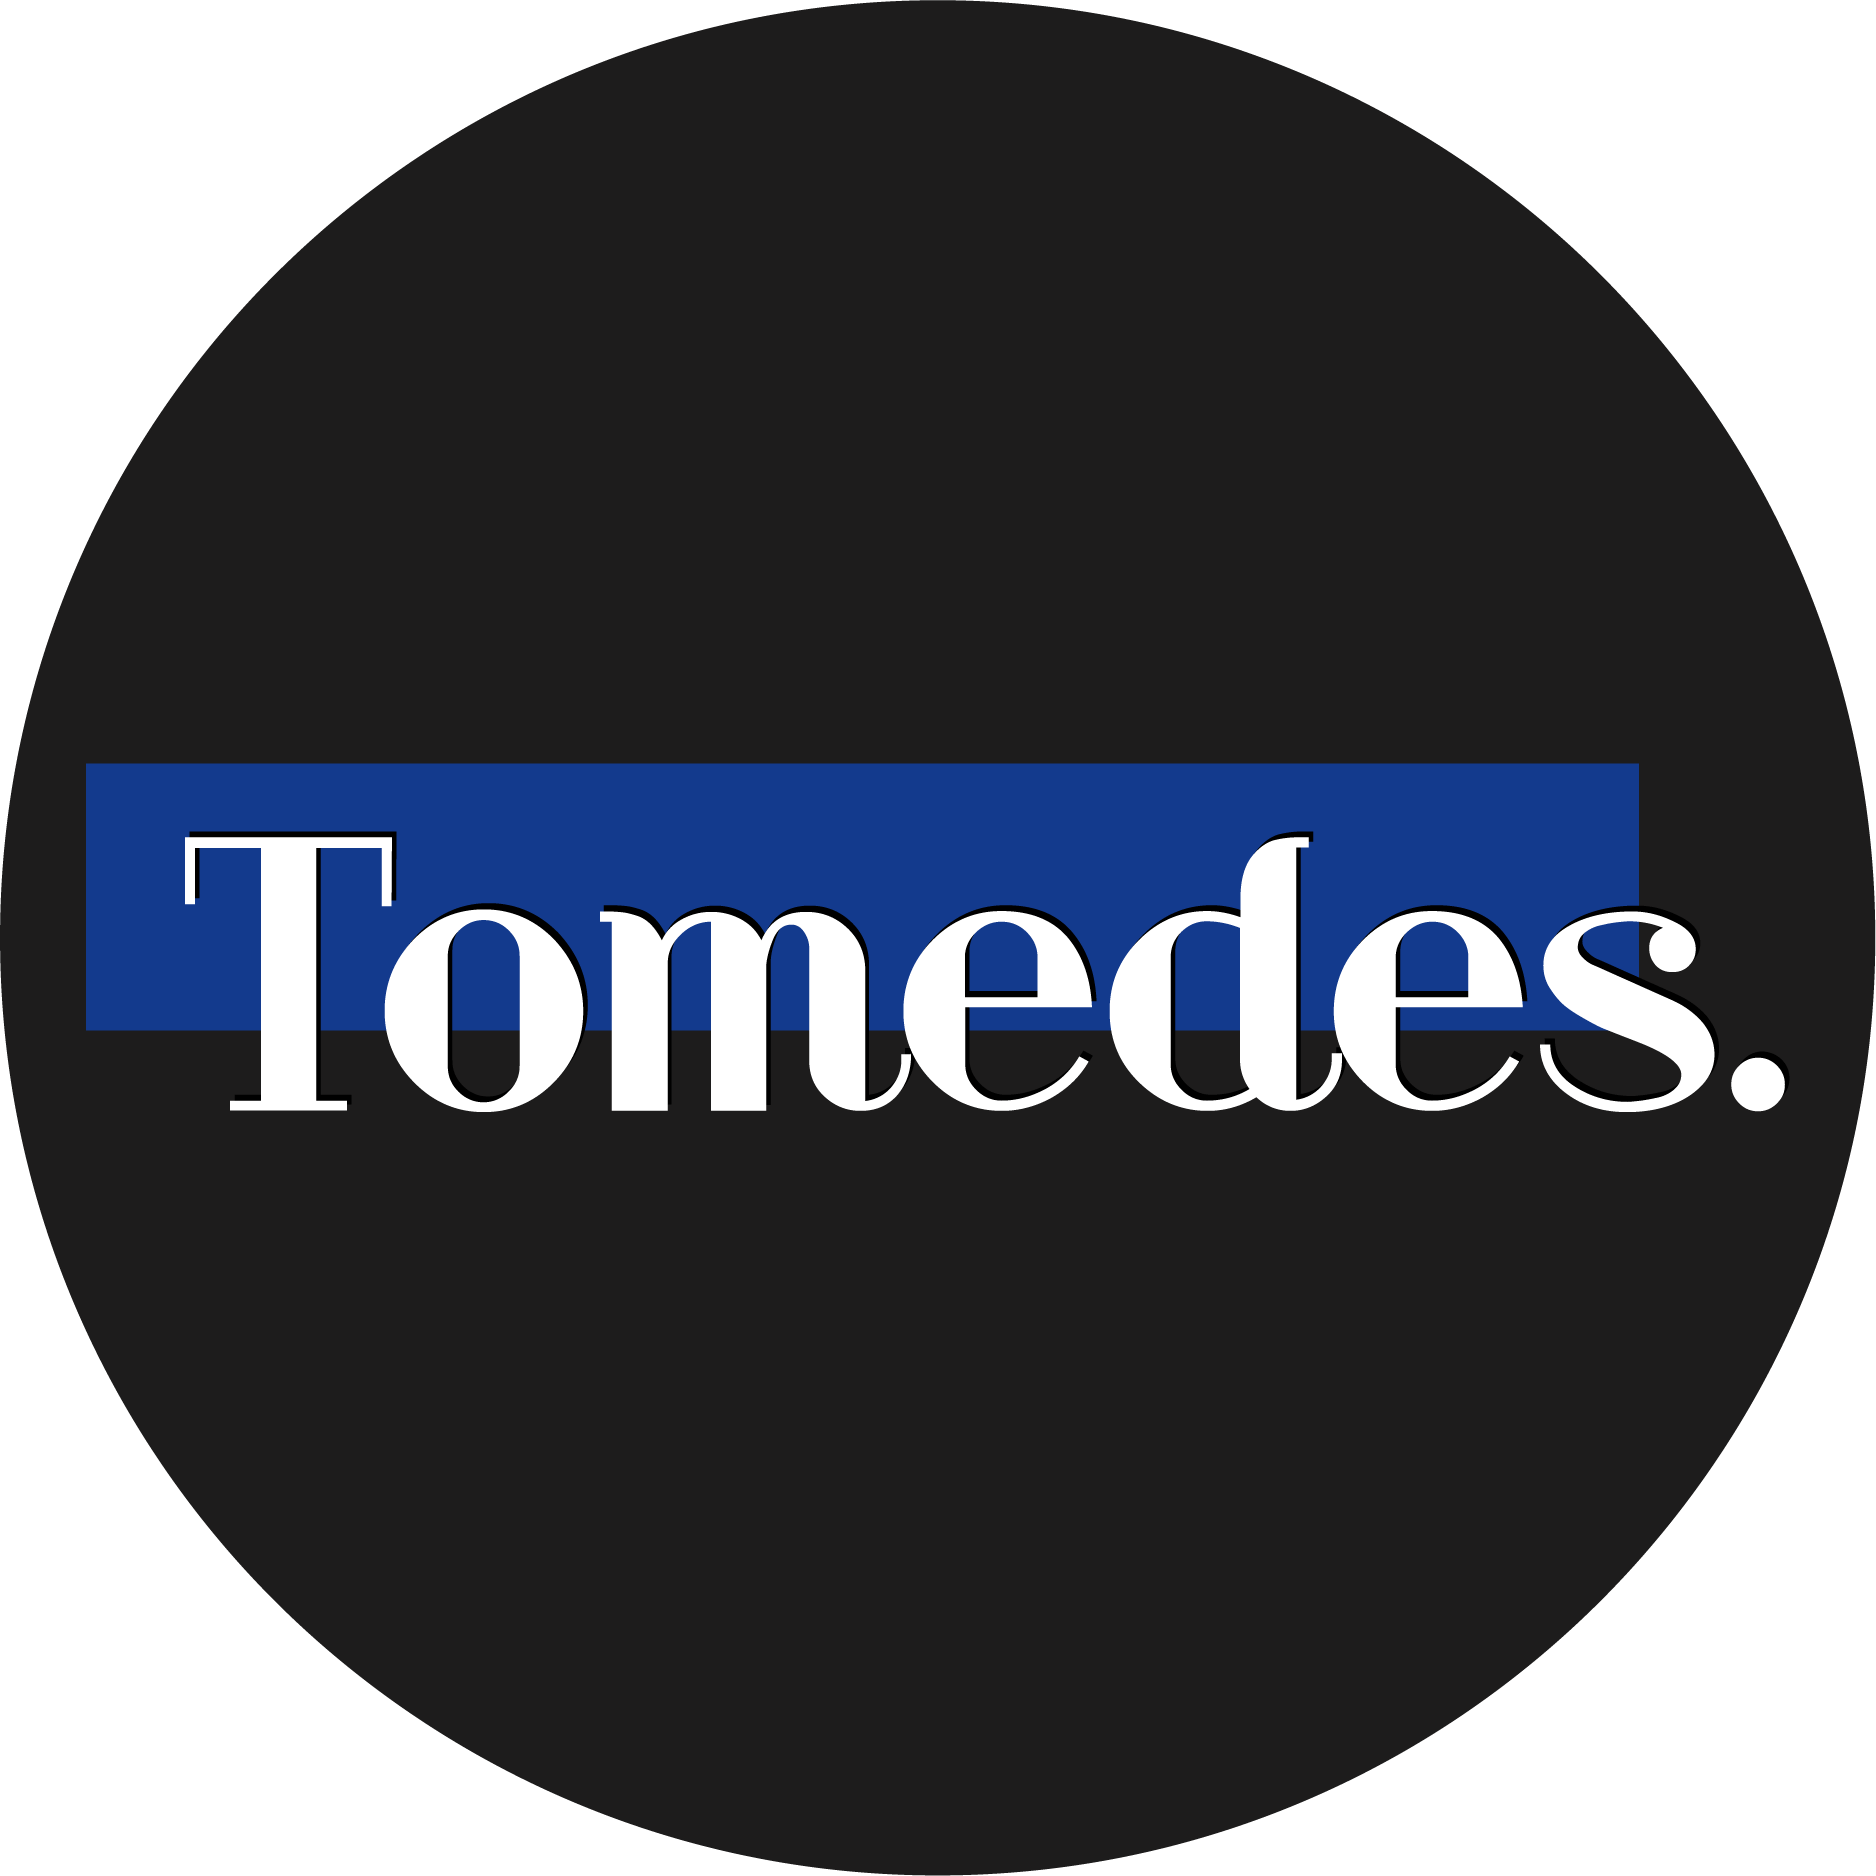 Tomedes Translation Services logo